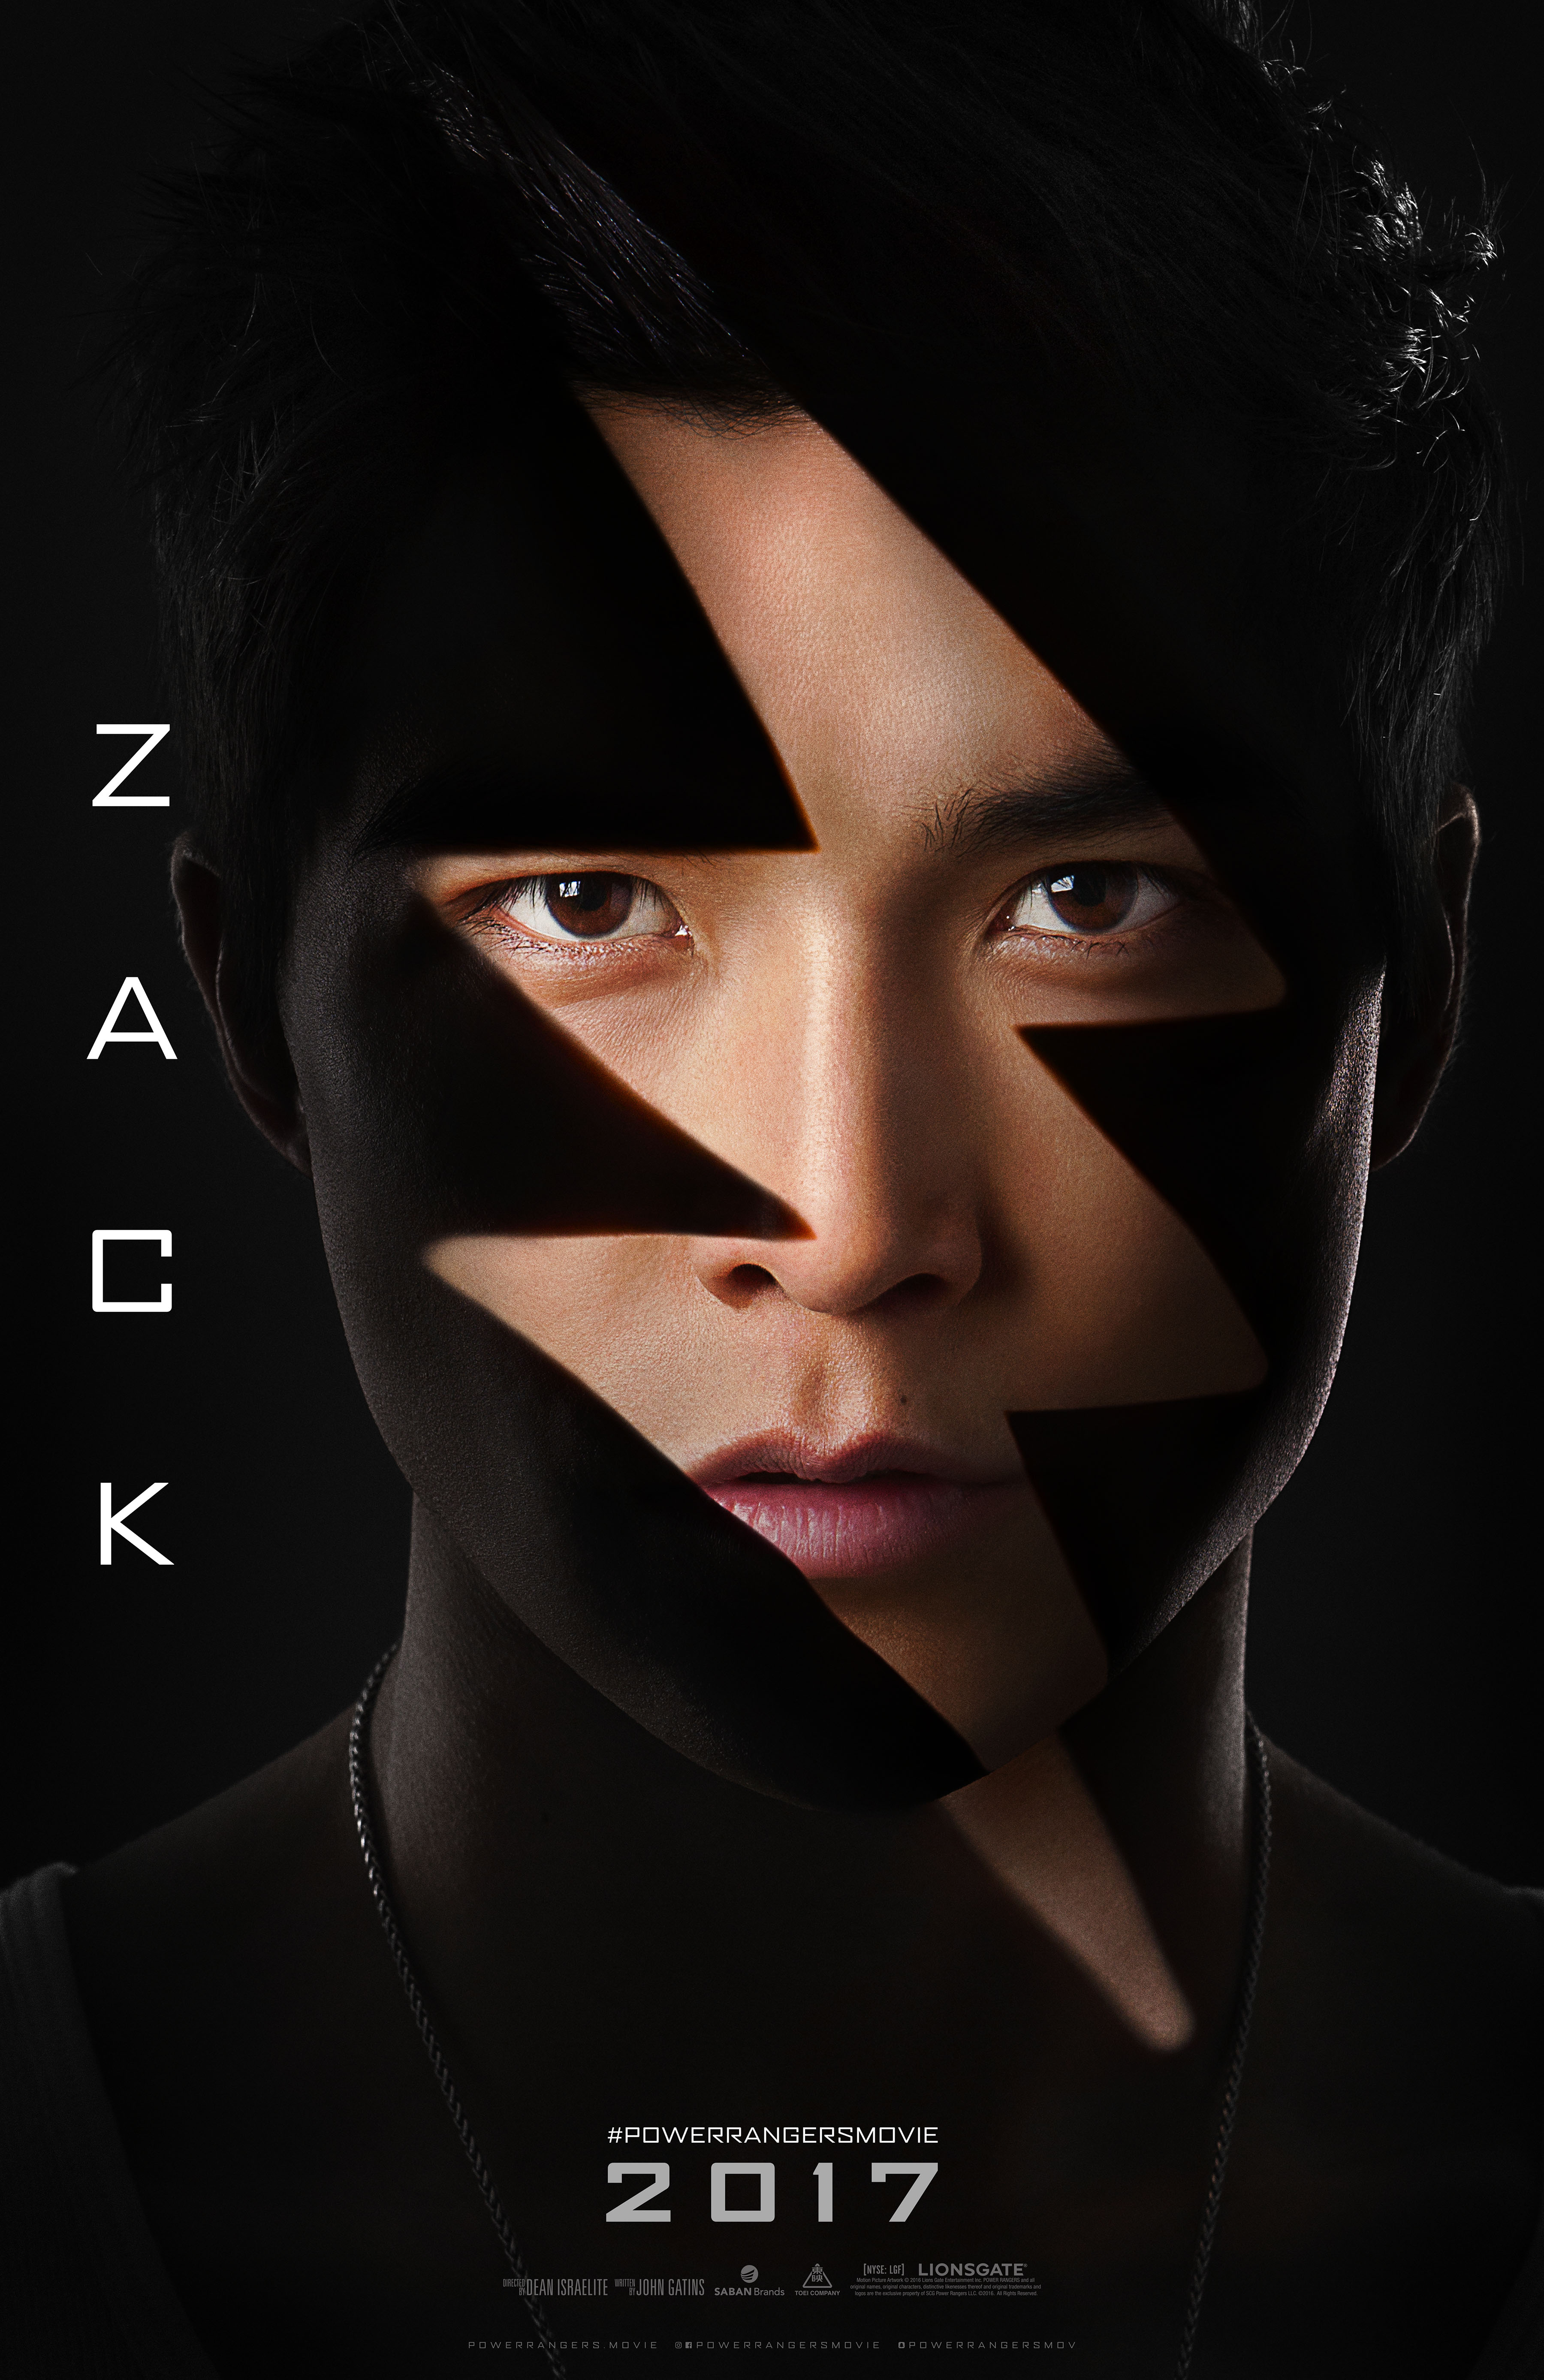 Zack-Poster-Power-Rangers